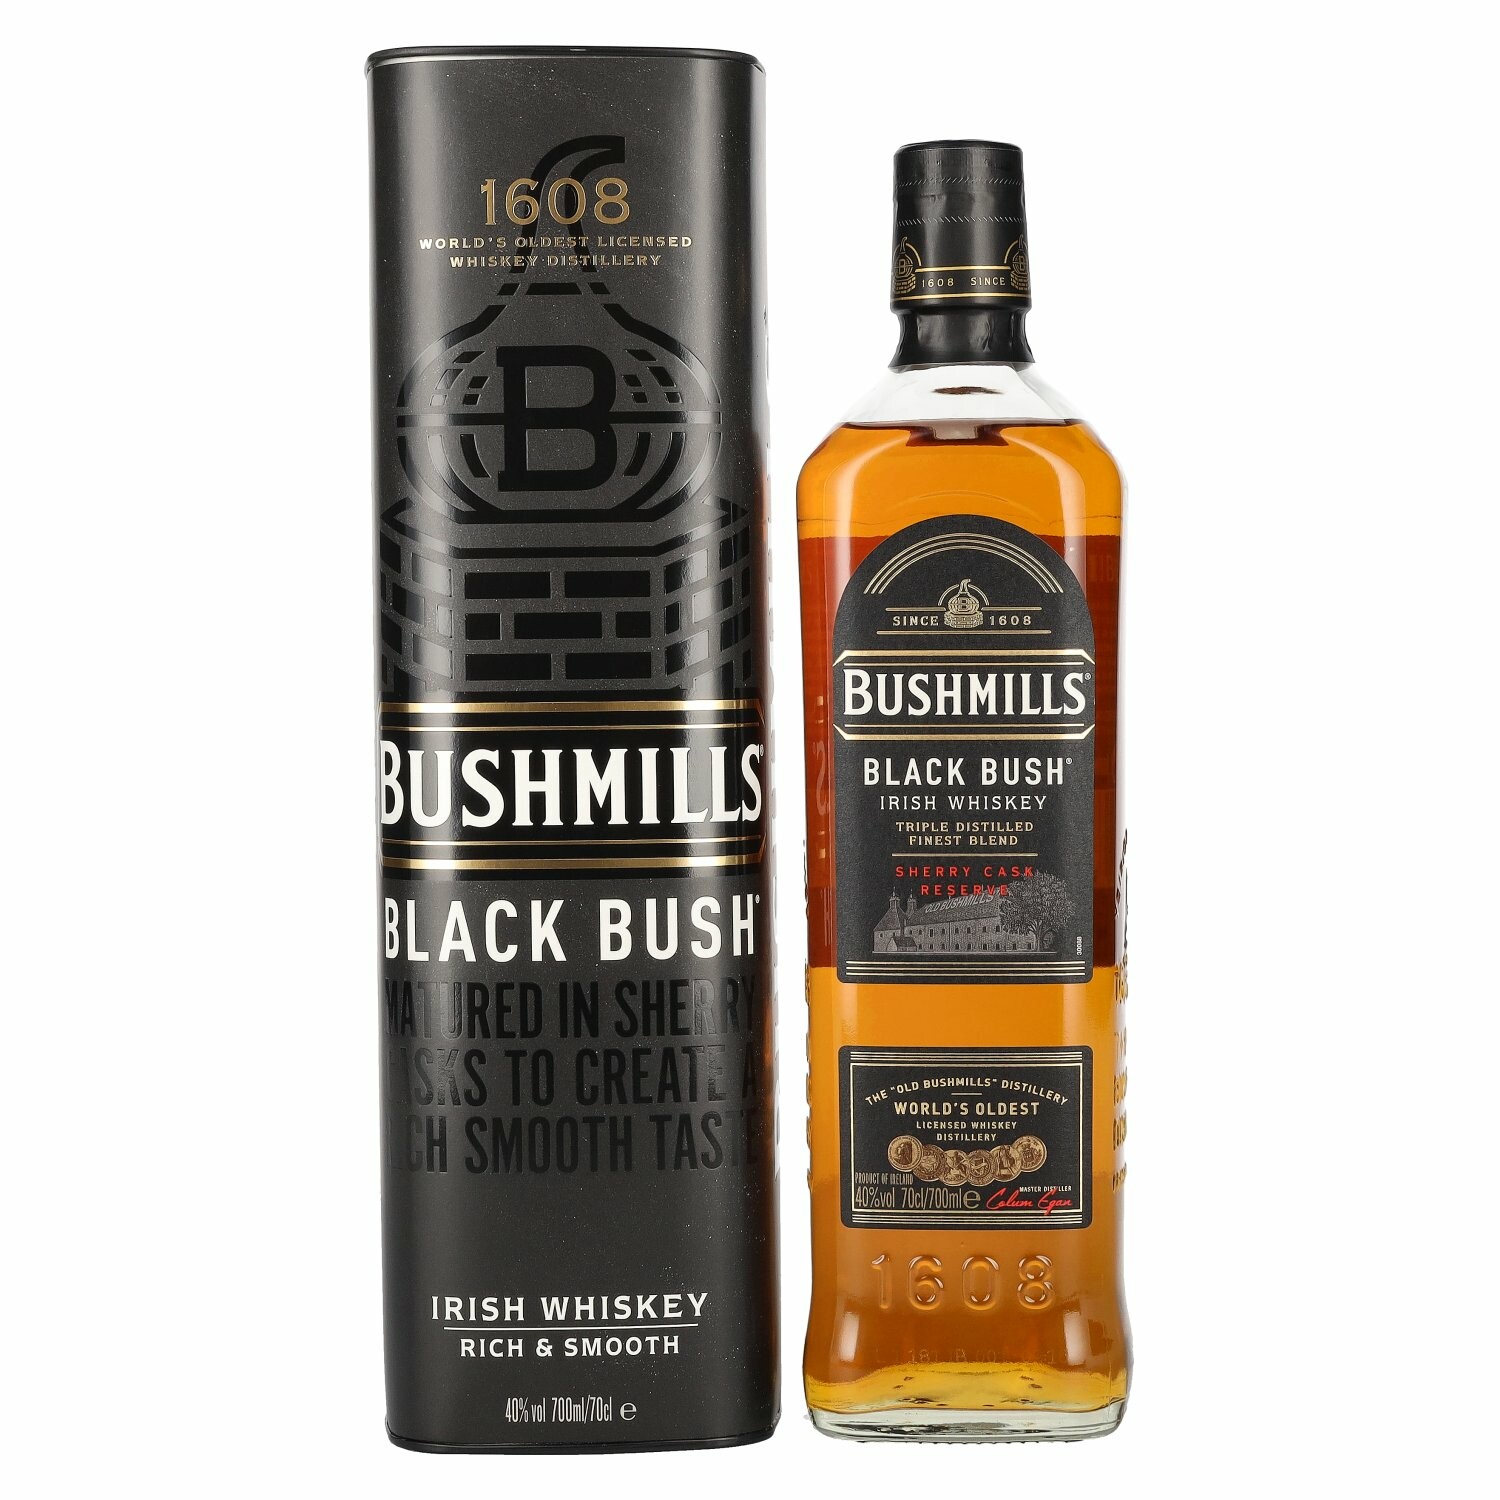 Bushmills BLACK BUSH Irish Whiskey 40% Vol. 0,7l in Giftbox